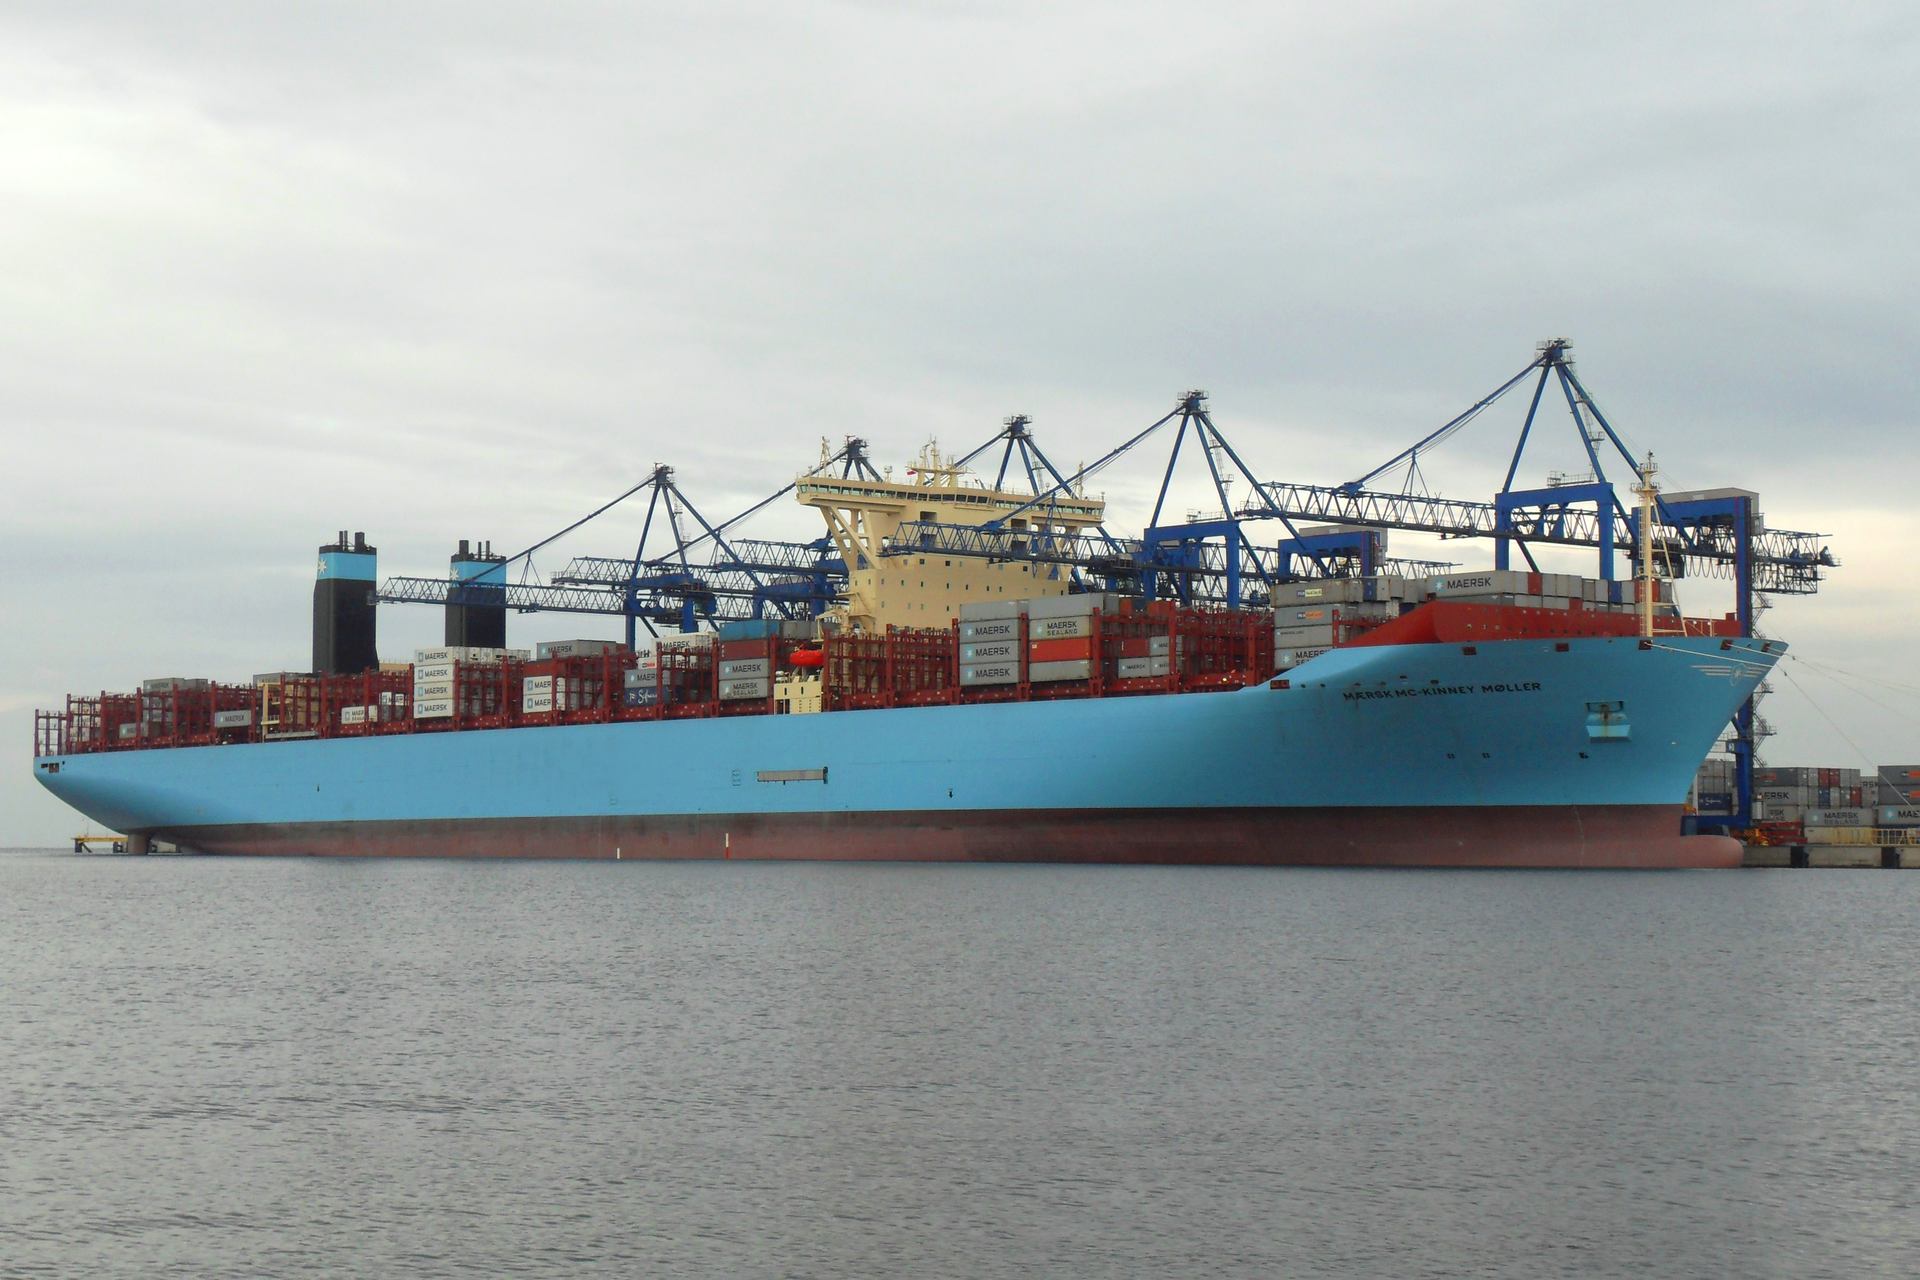 Zdjęcie wielkiego kontenerowca zbliżającego się do portu